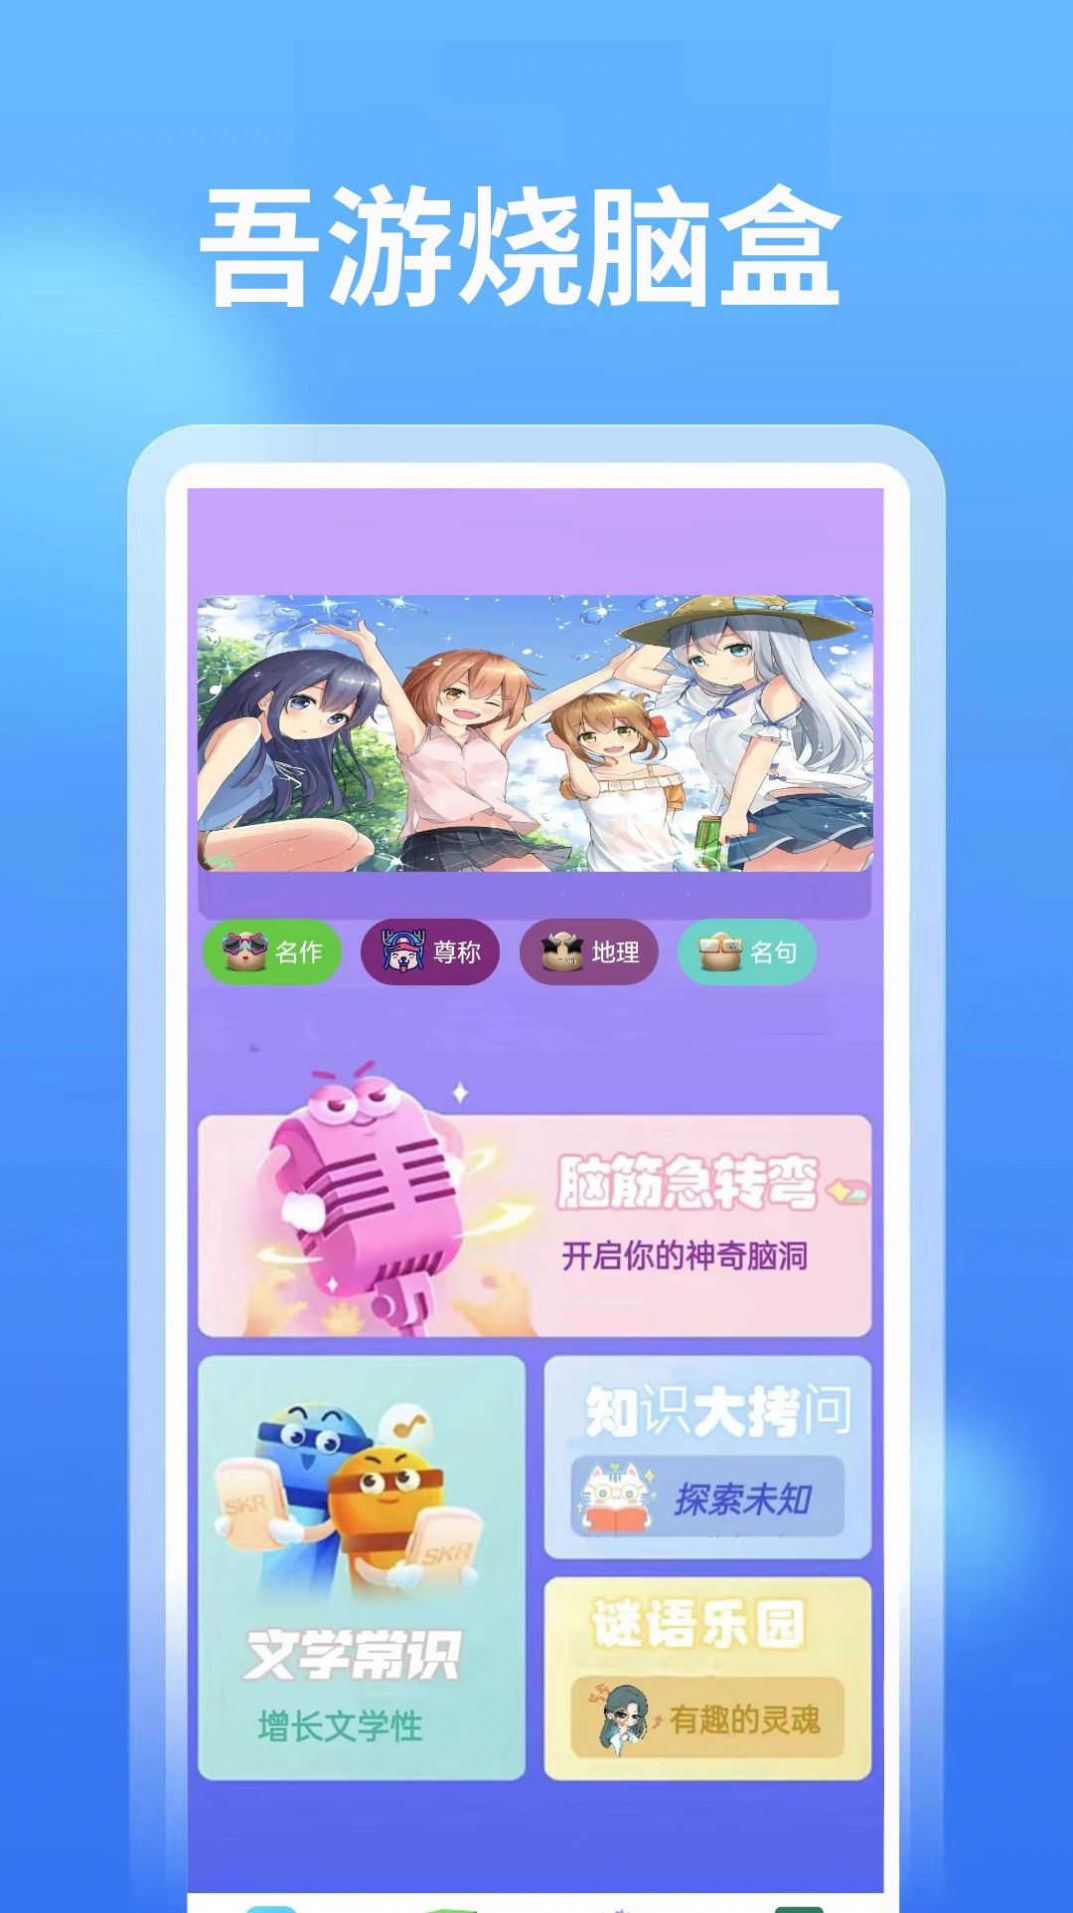 4768吾游盒手机版app